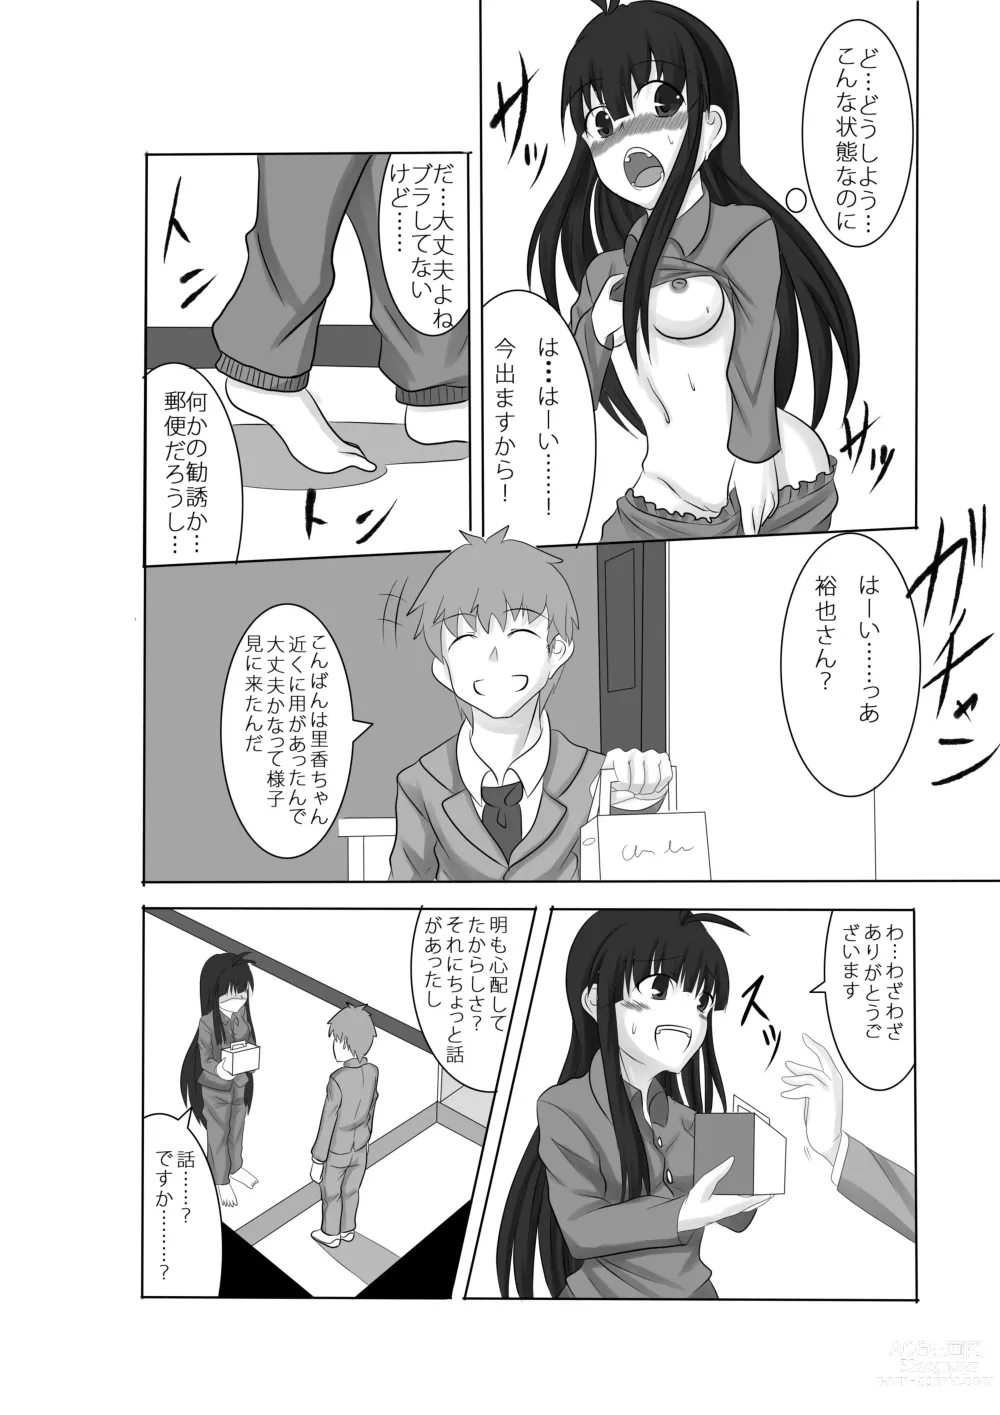 Page 13 of doujinshi Anata no Ko o Haramu made